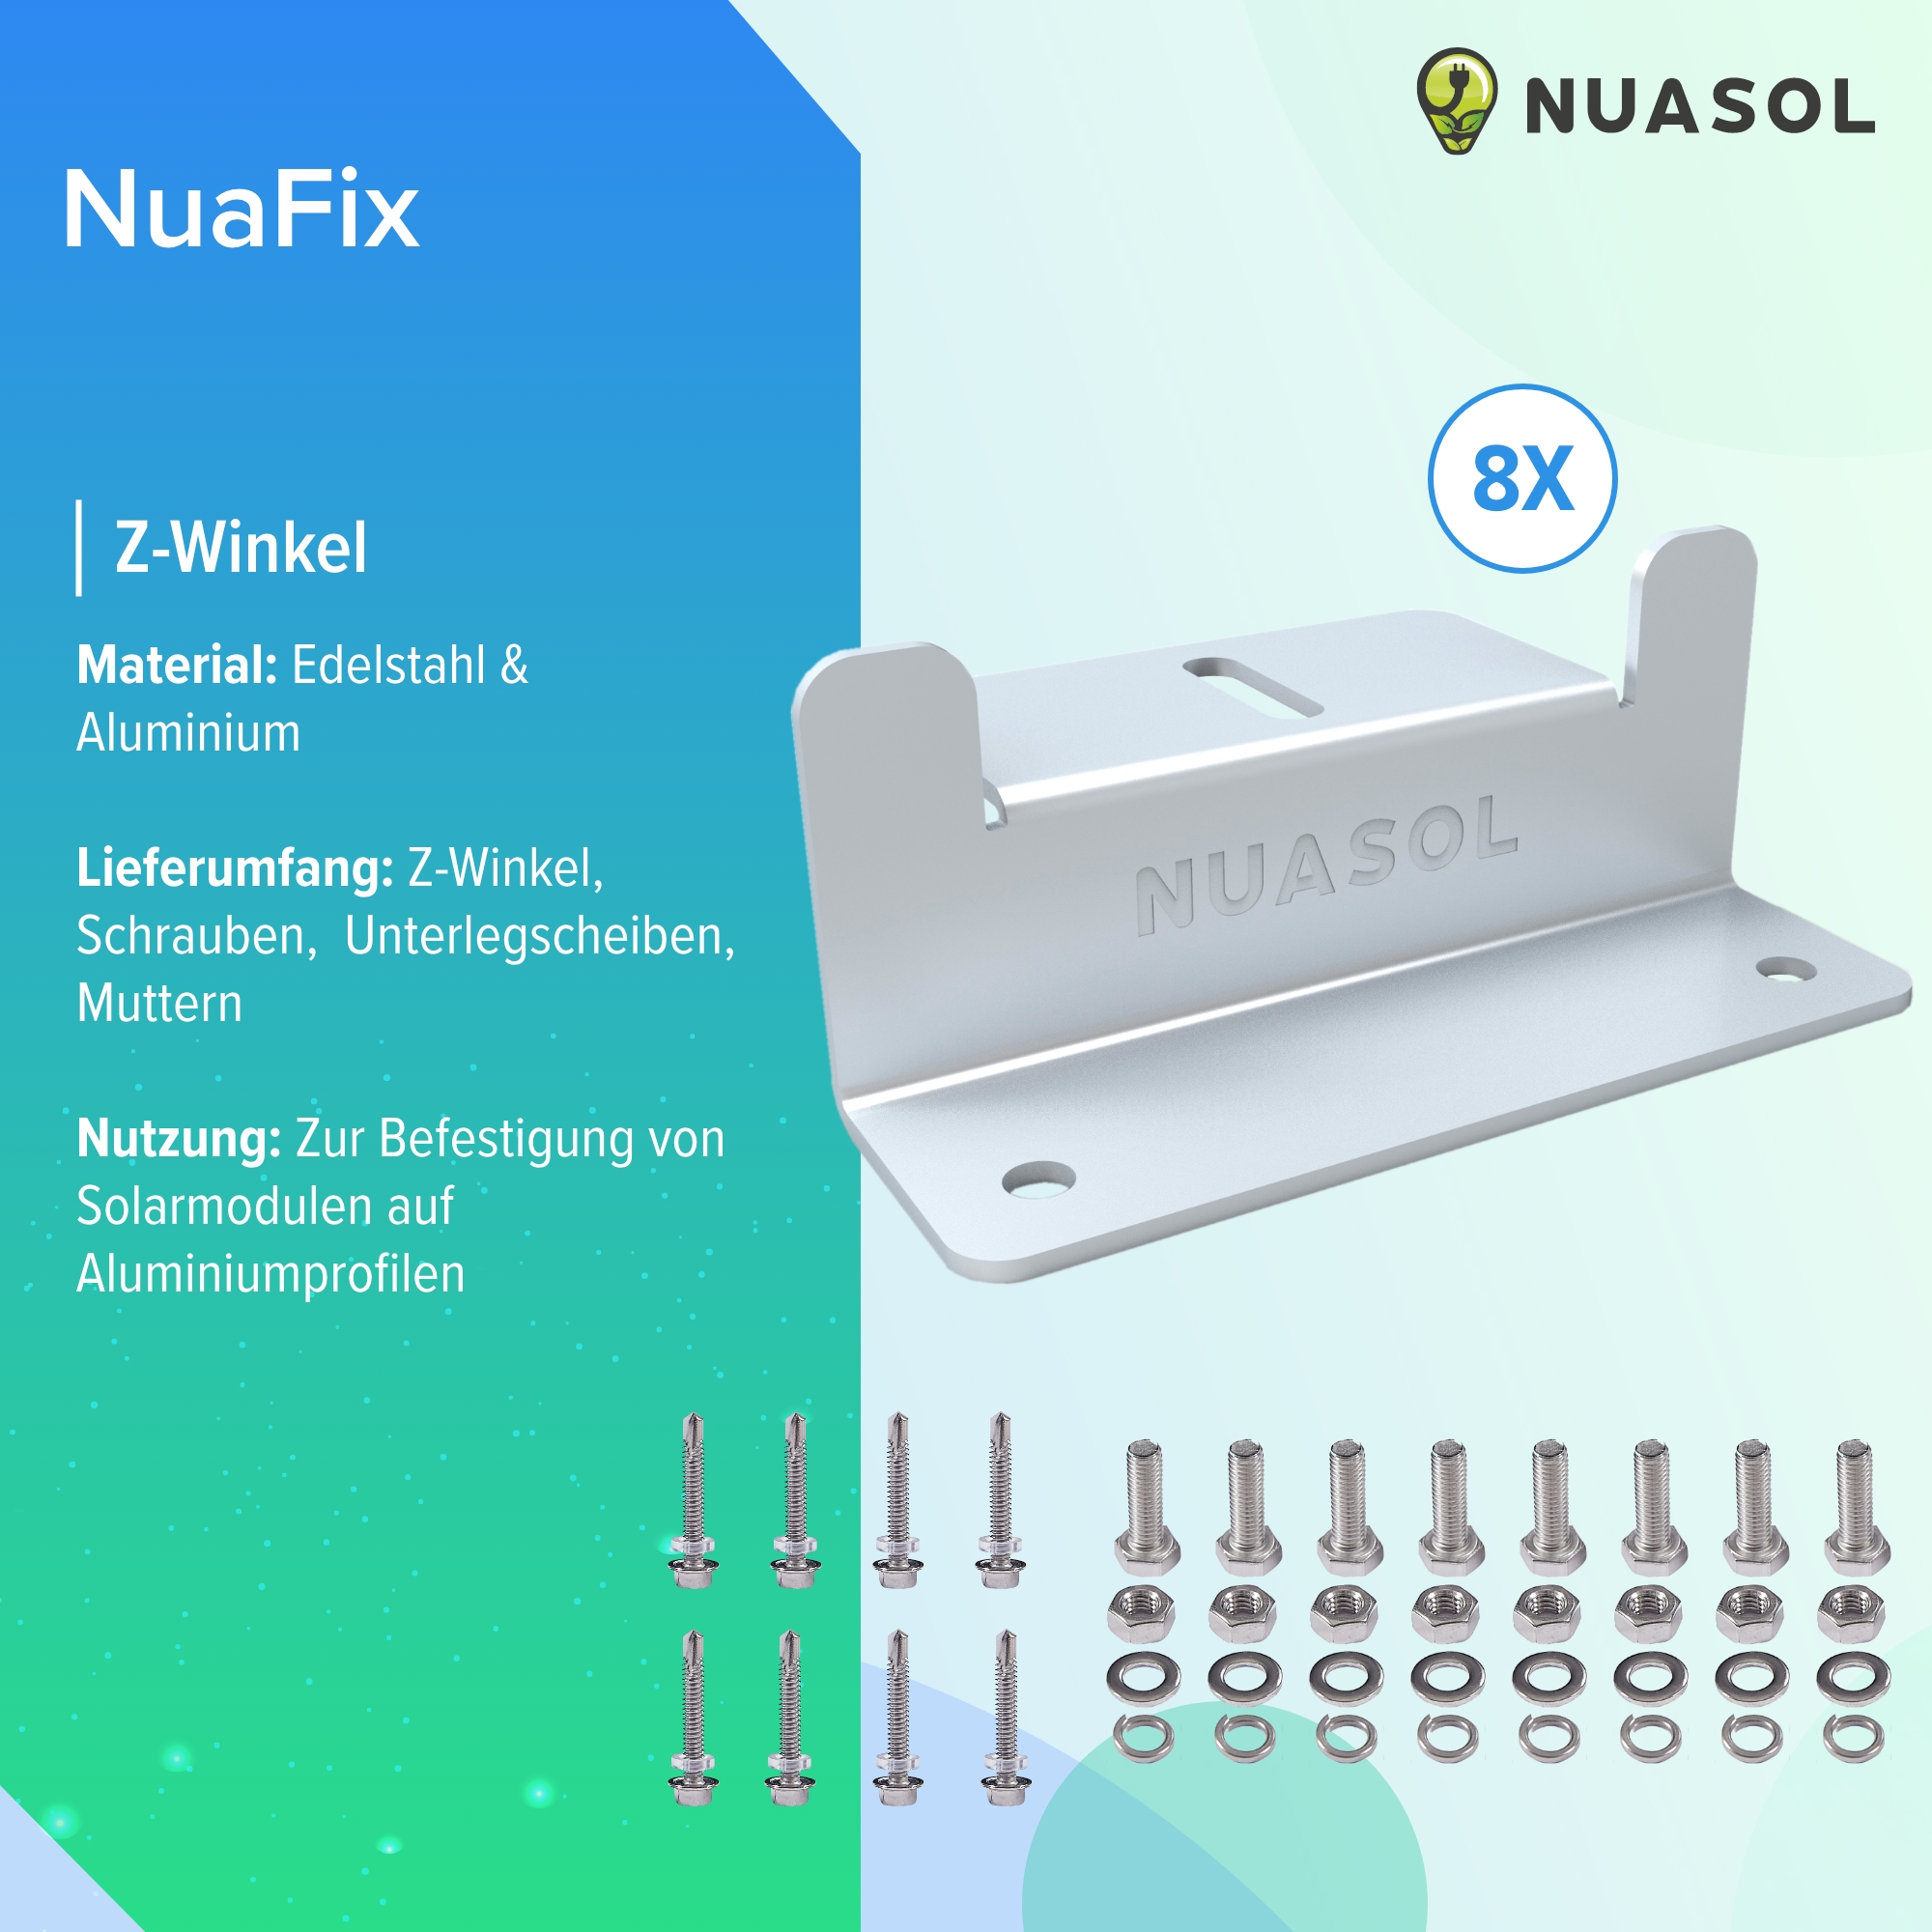 8x Aluminium Z-Winkel - NUASOL Solarenergiesysteme